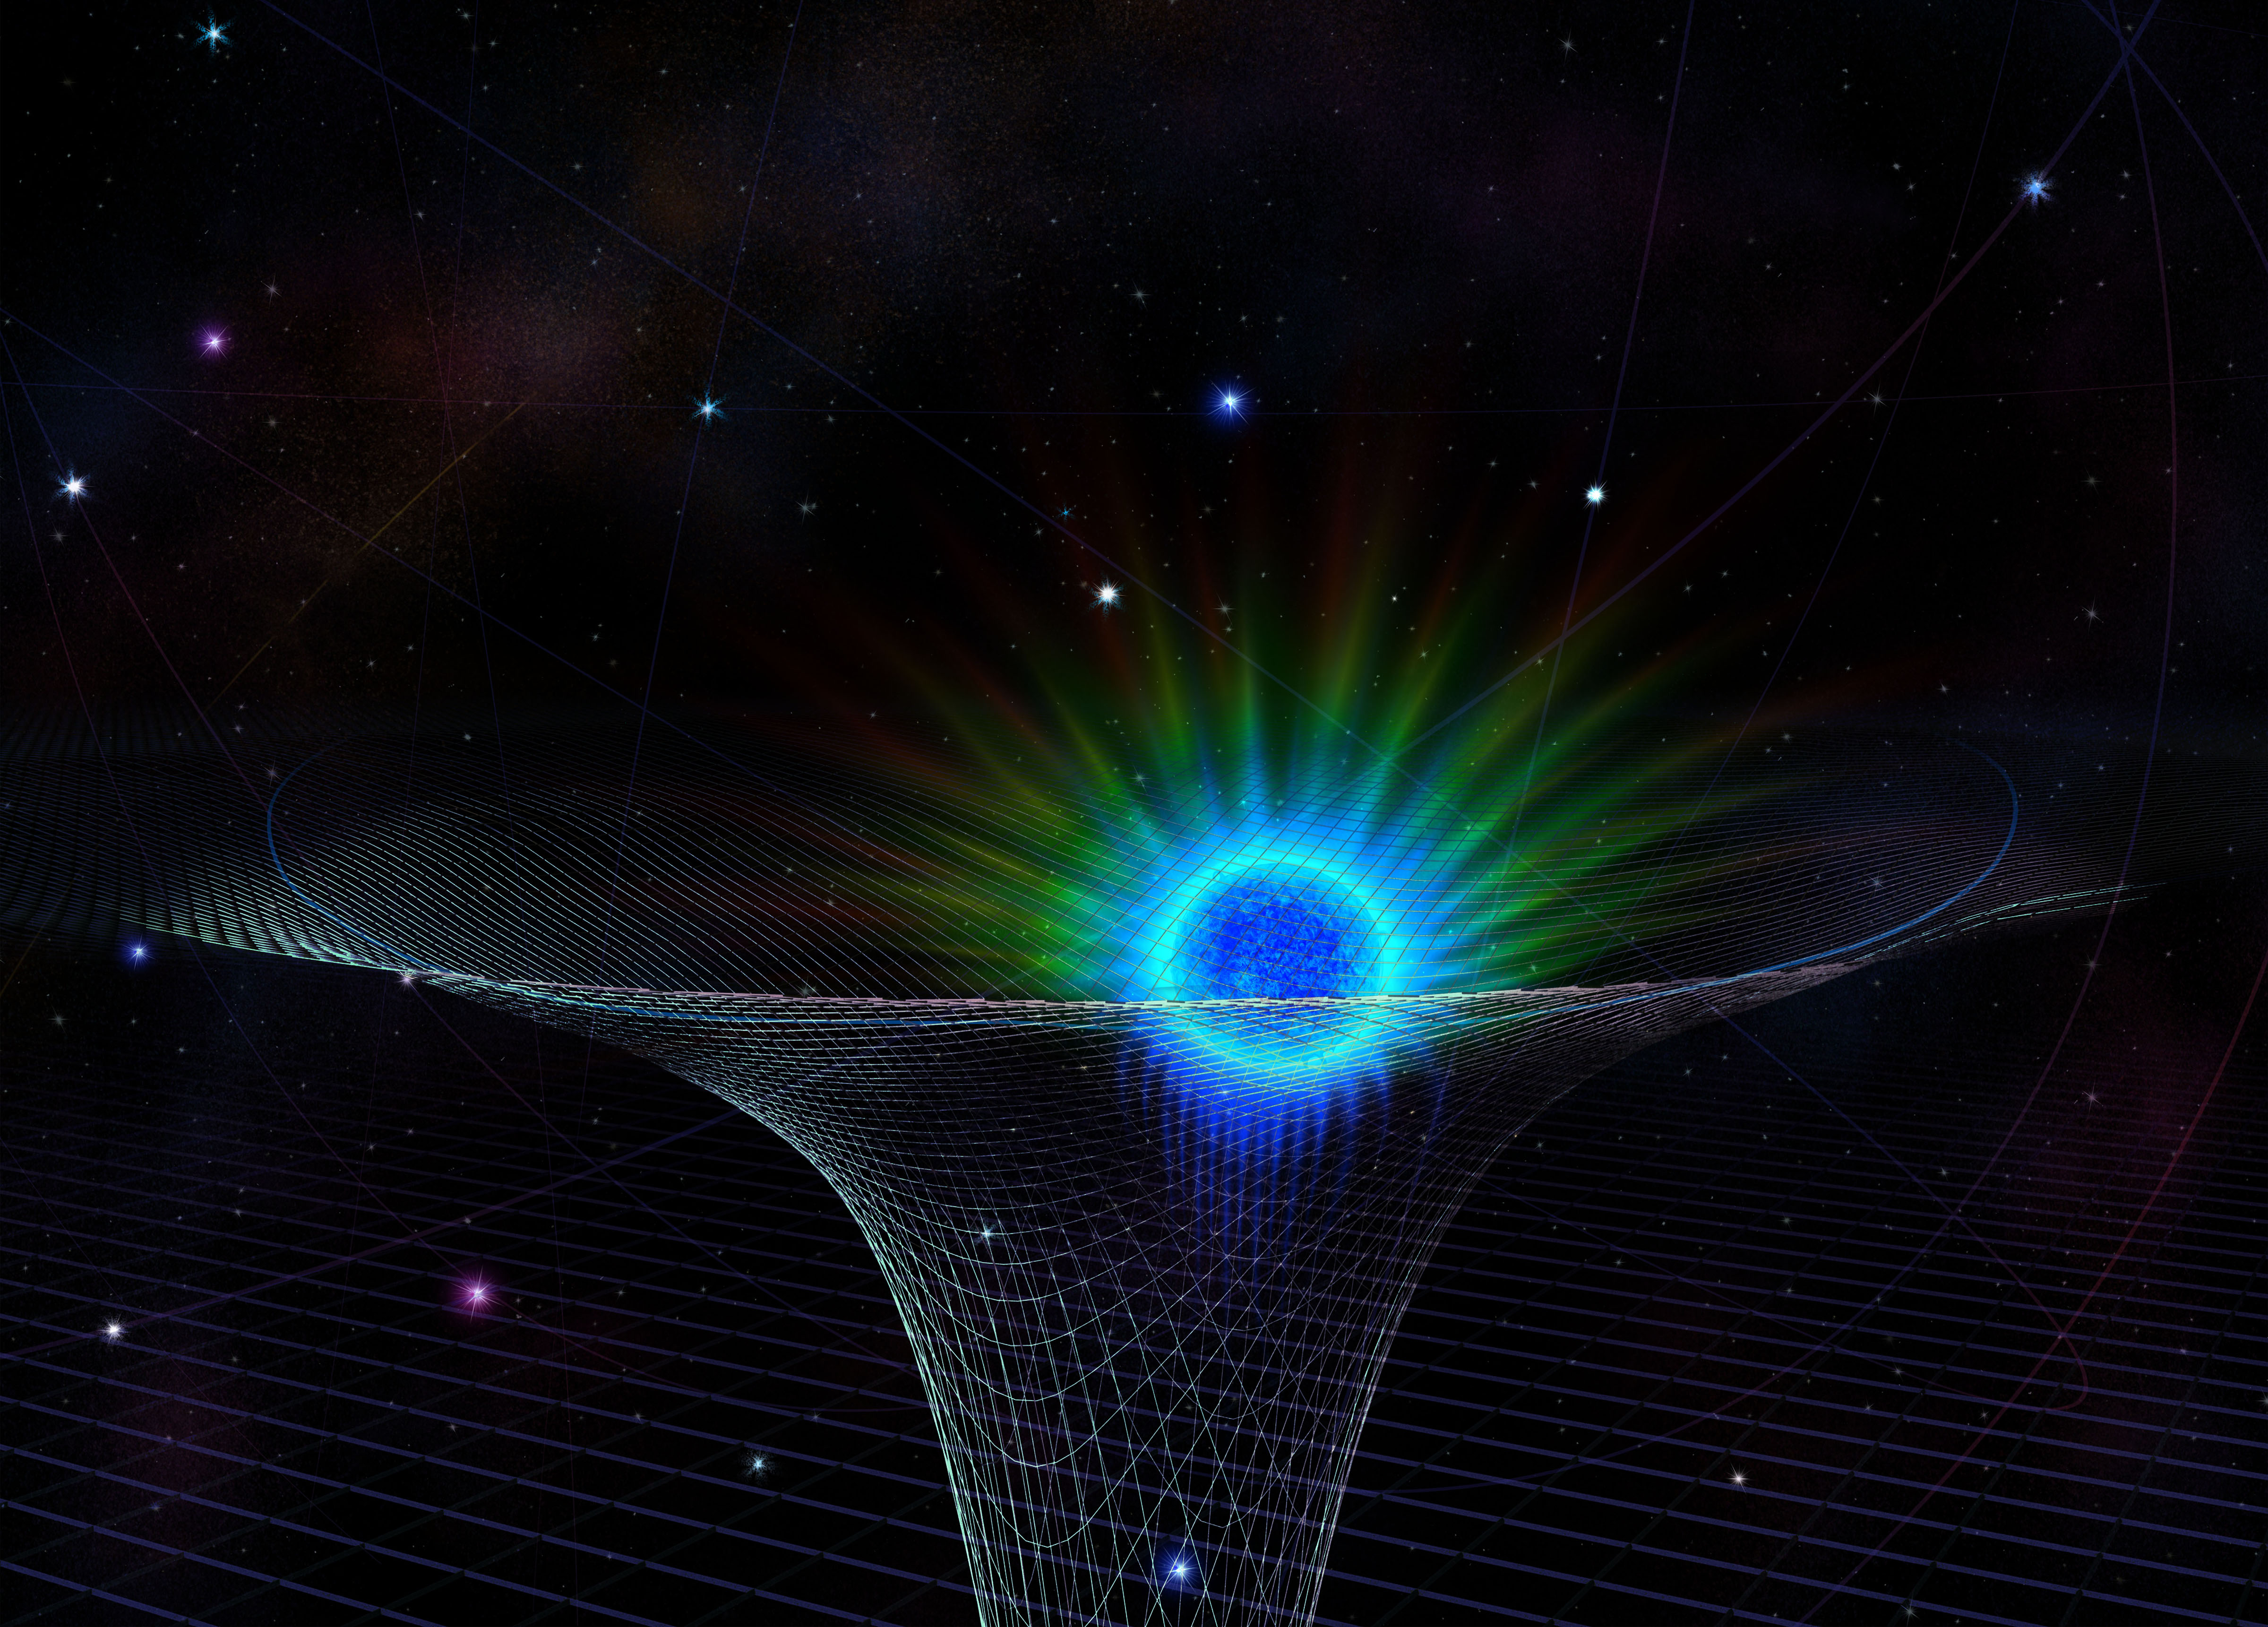 Una estrella conocida como S0-2 (el objeto azul y verde en la representación de este artista) se acerca al agujero negro supermasivo situado en el centro de la Vía Láctea en 2018. Representación artística de Nicolle Fuller / National Science Foundation.